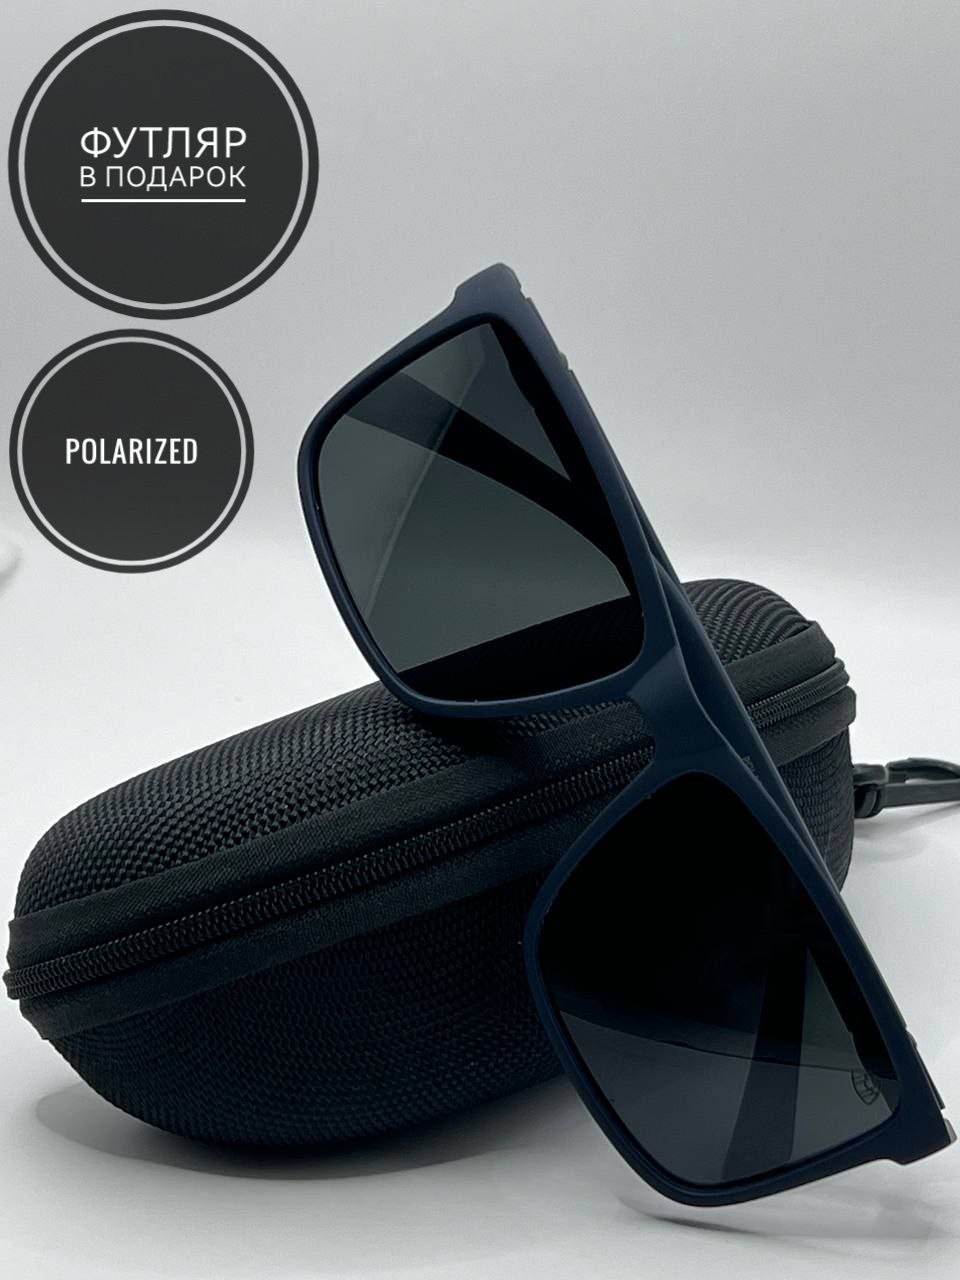 Солнцезащитные очки мужские SunGold 1Майбах, черные - купить в Москве, цены на Мегамаркет | 600016644573